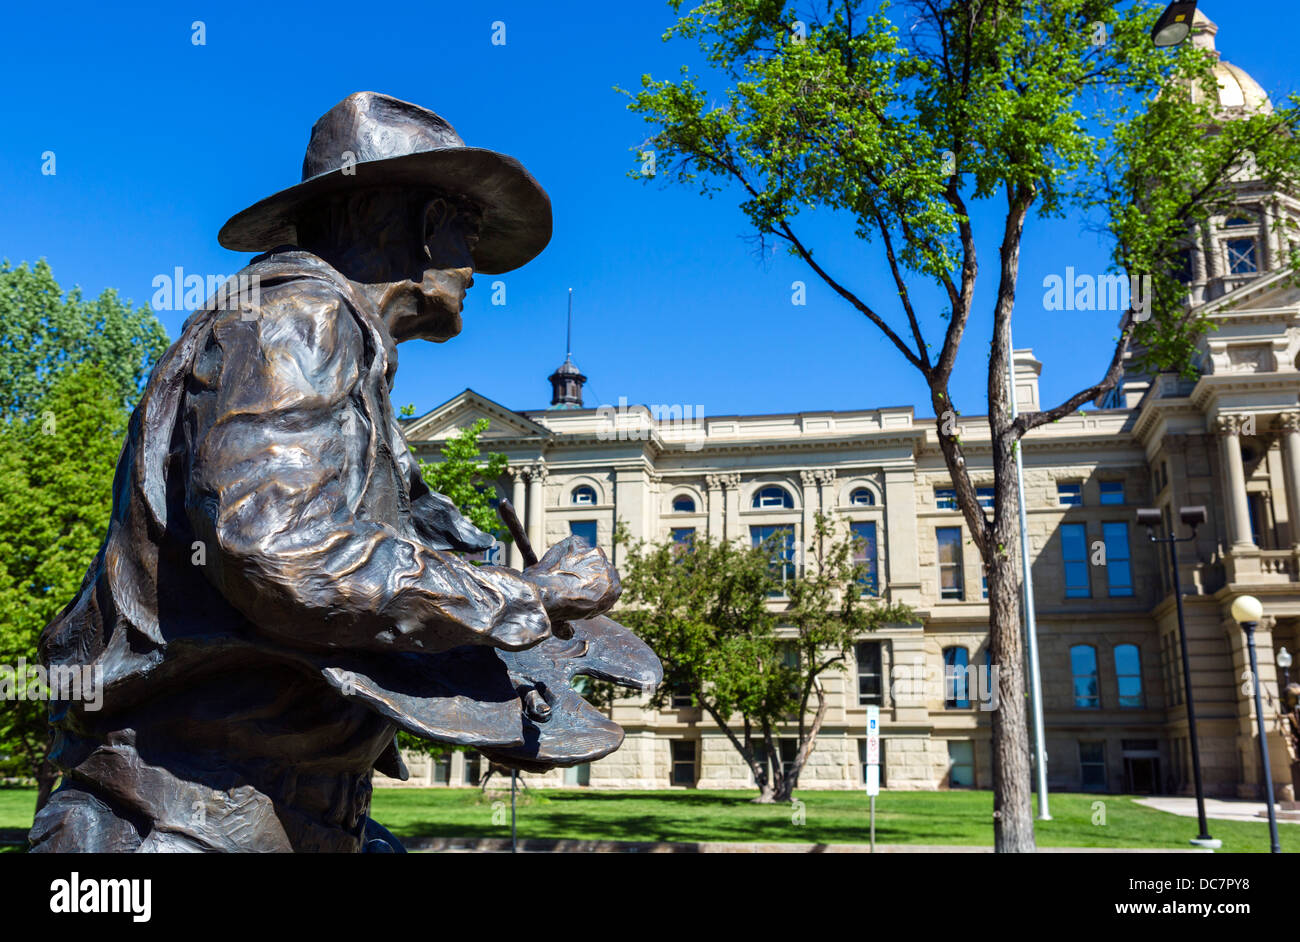 Jerry Palen la scultura del cowboy artista William 'Bill' Gollings nella parte anteriore del Wyoming State Capitol, Cheyenne, Wyoming USA Foto Stock